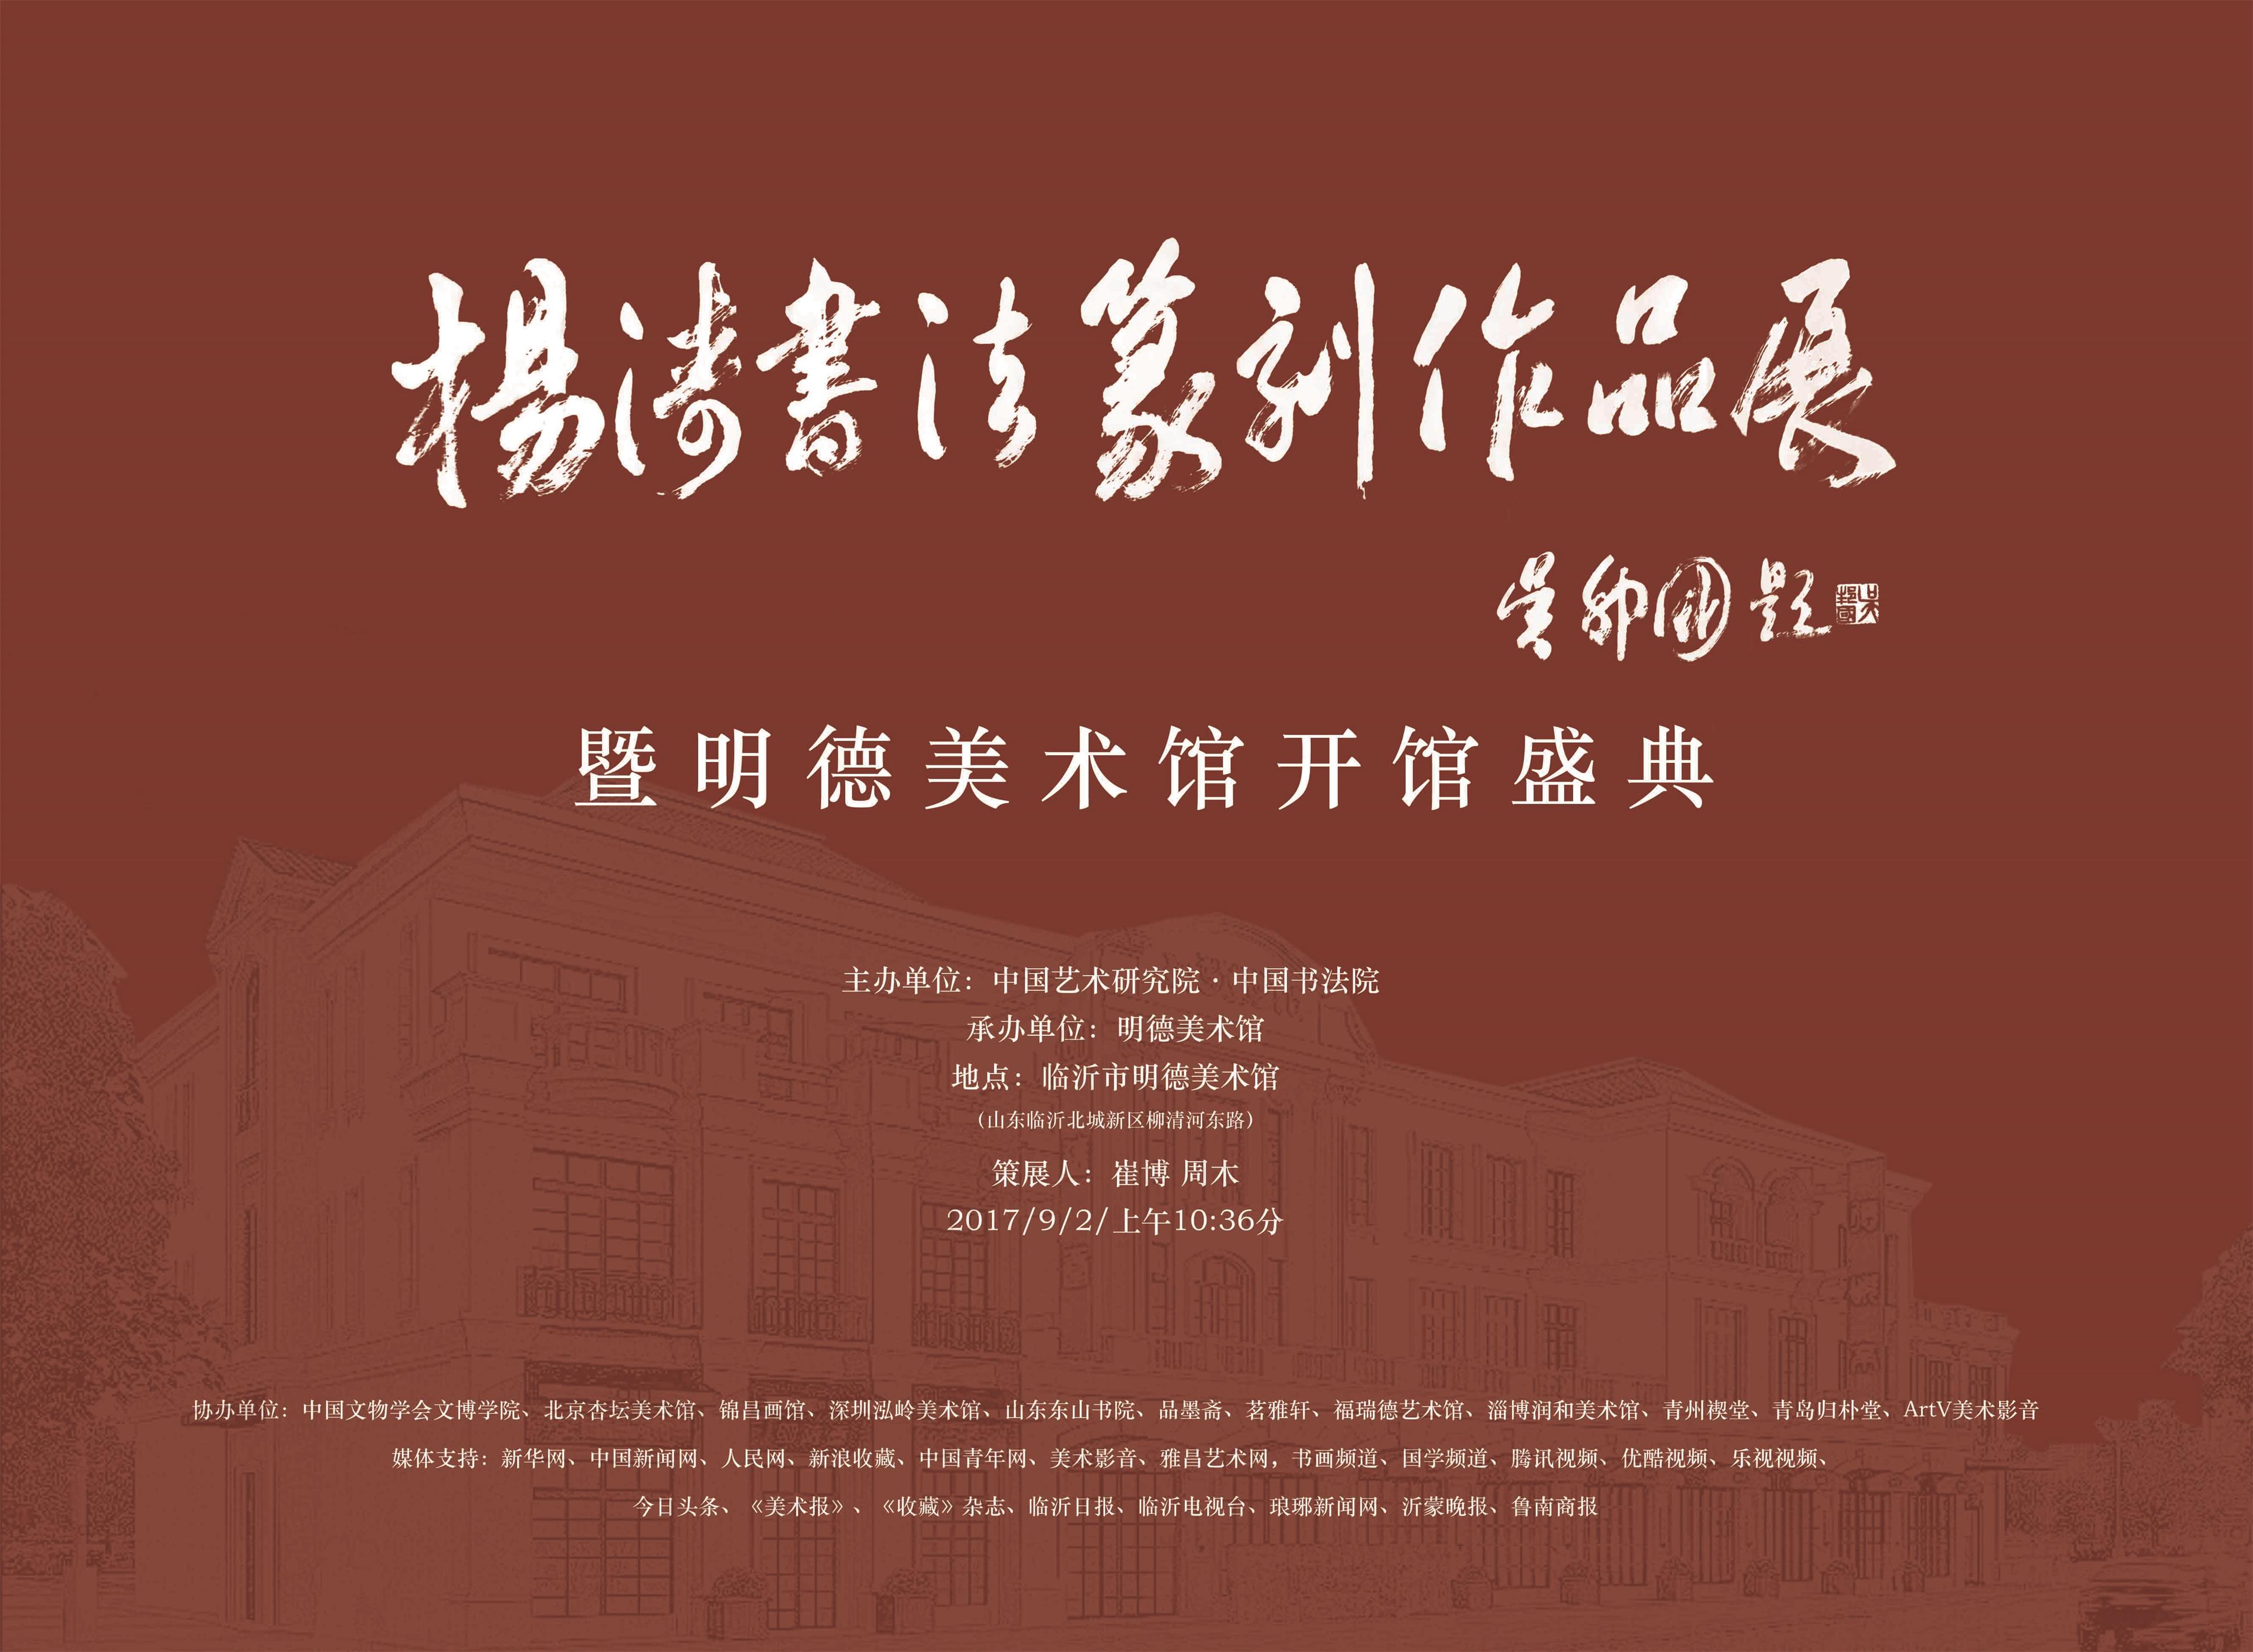 杨涛书法篆刻作品展暨明德美术馆开馆典礼将于9月2日开幕